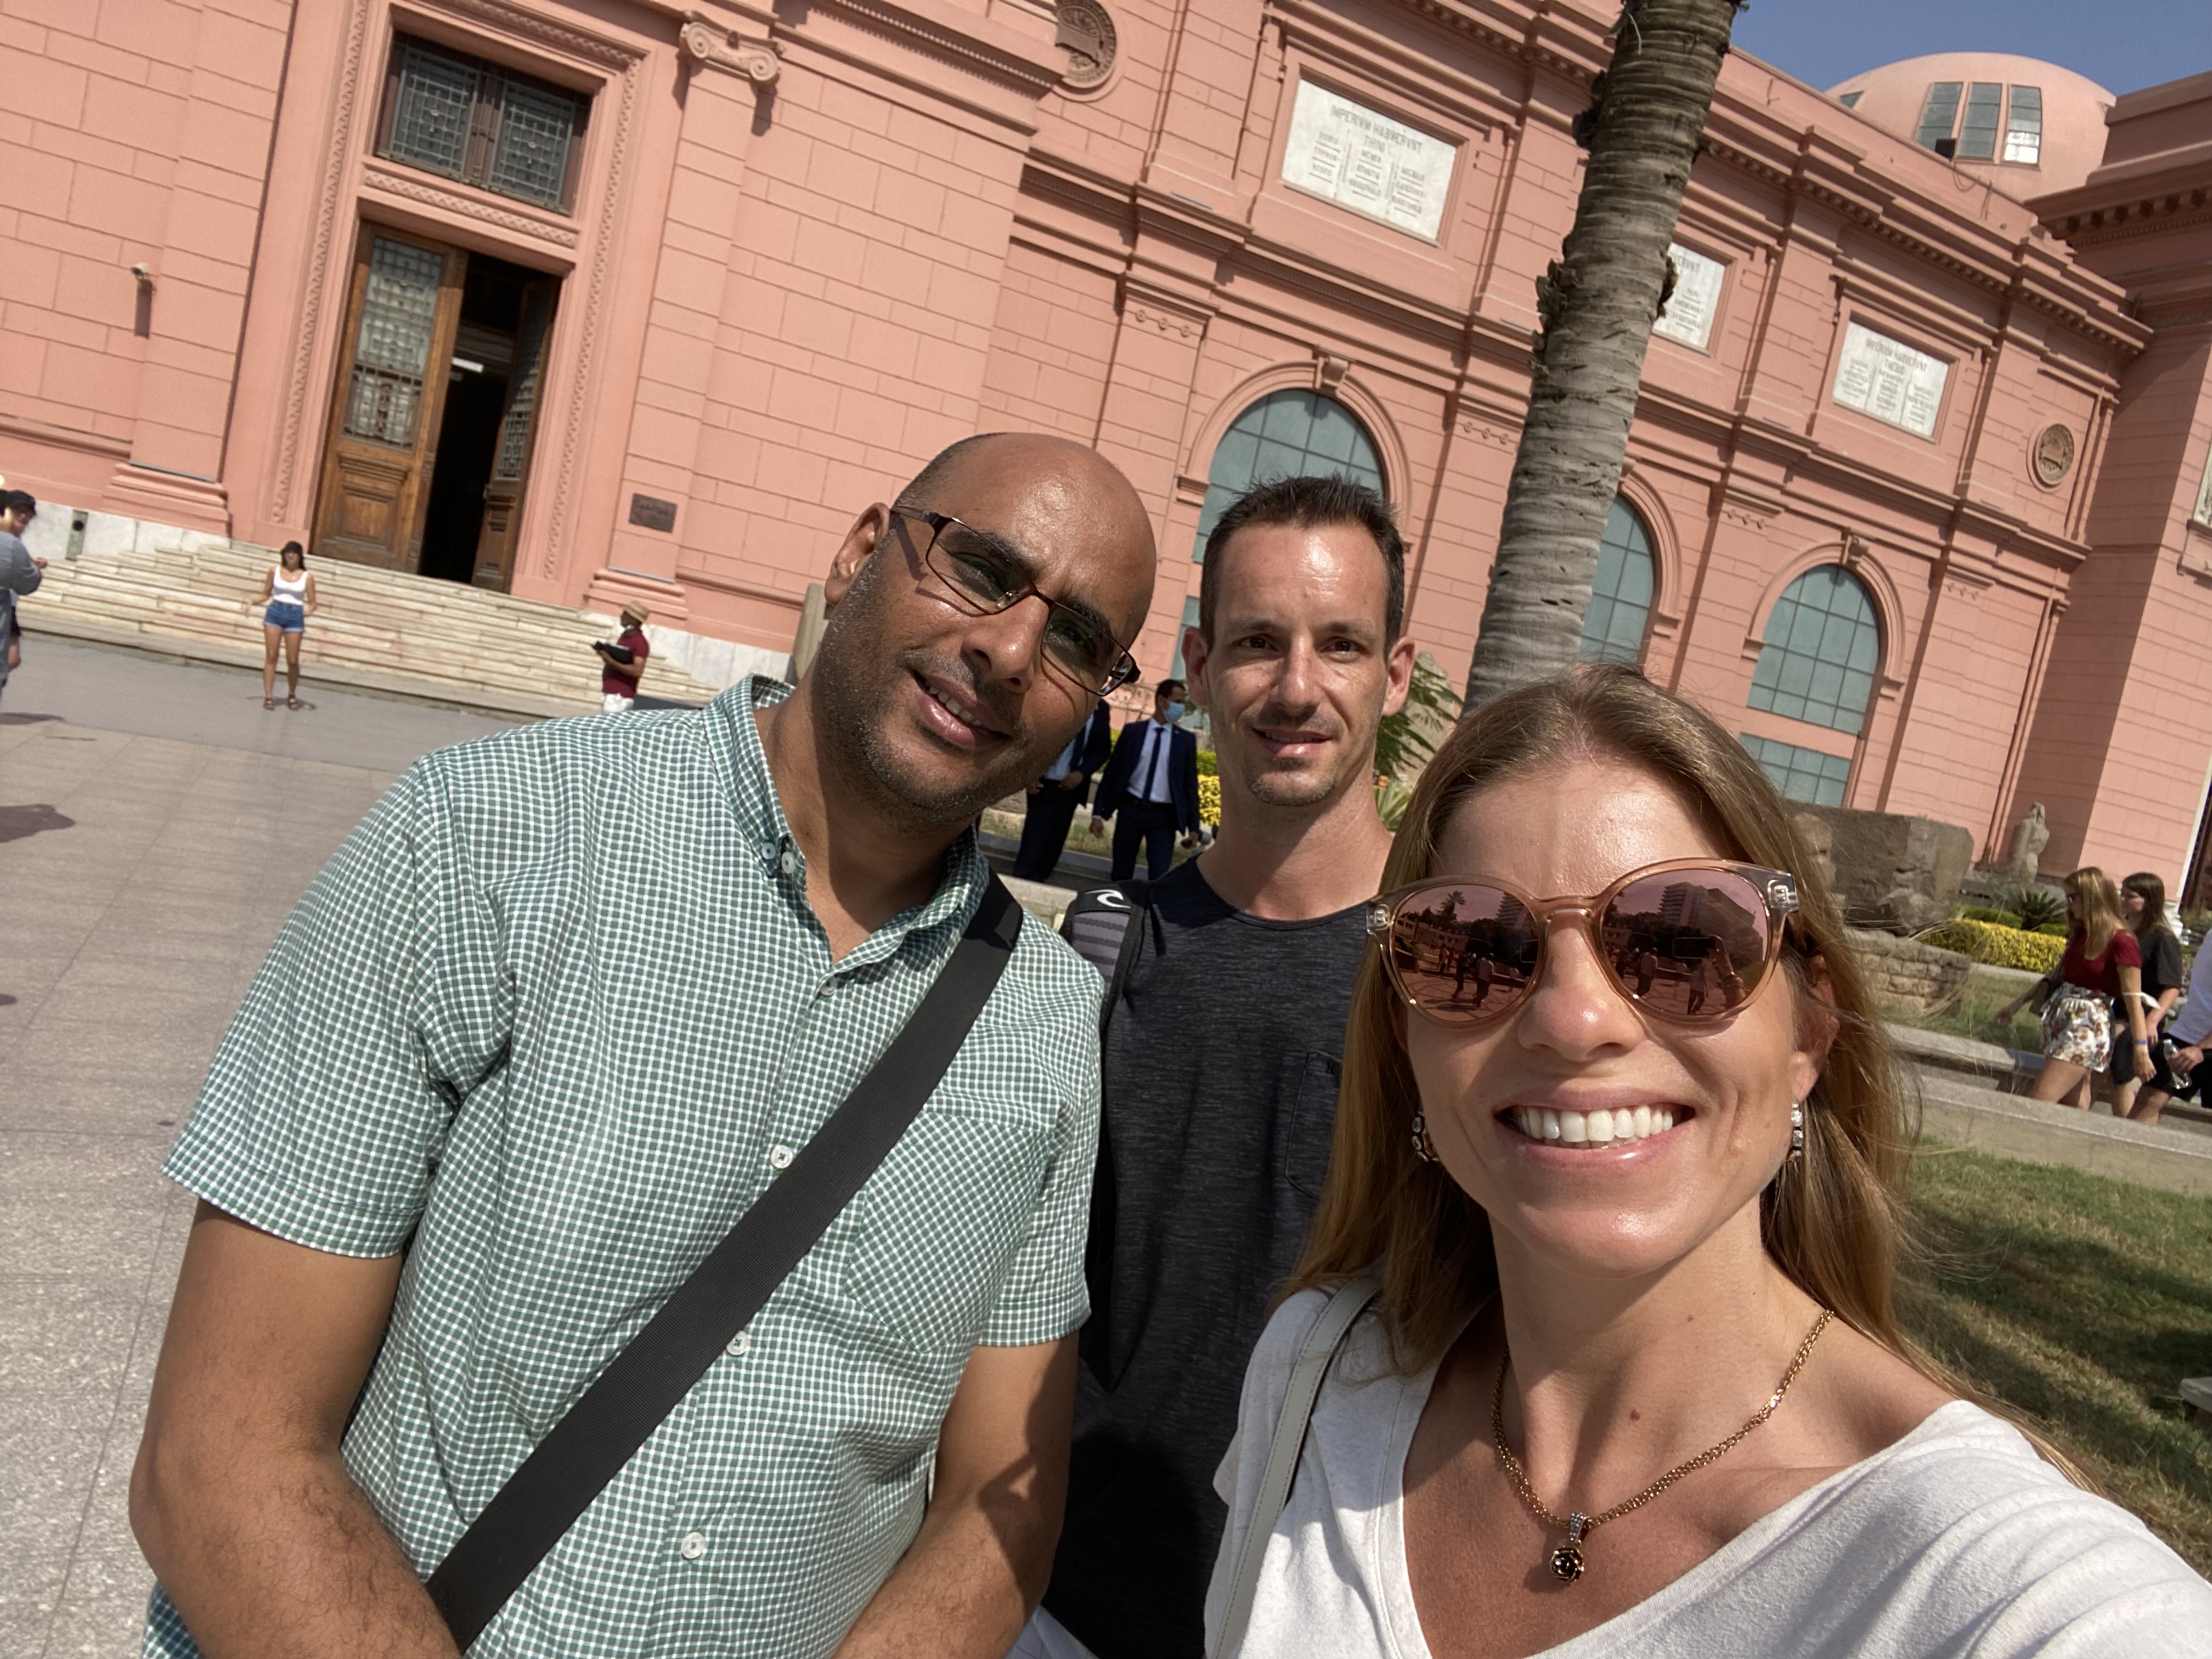 Nosso guia para visitar o Museu do Cairo, mesquita e mercado. Um bom guia no Egito é indispensável!